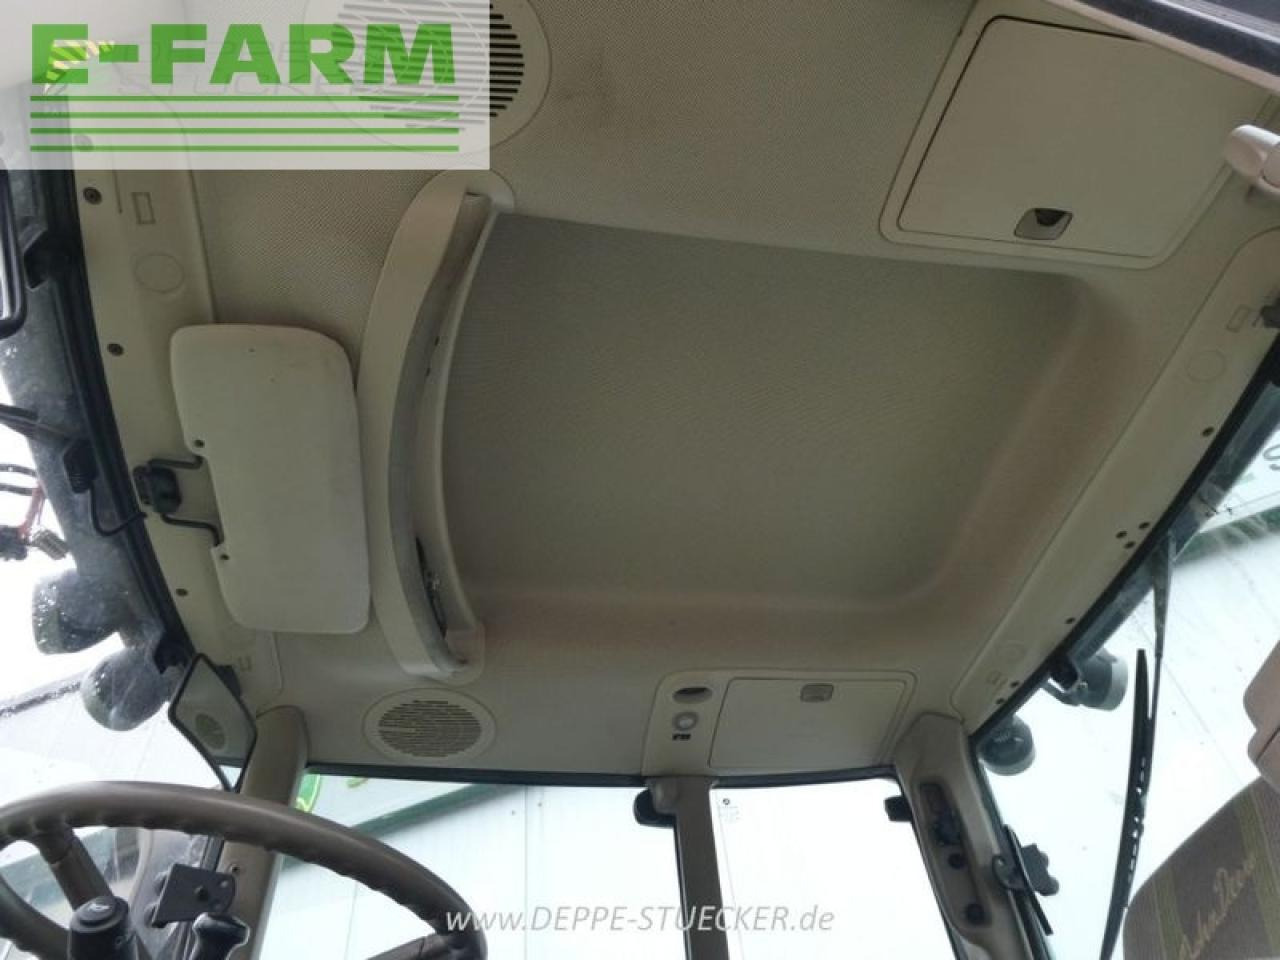 Traktor John Deere 7530 premium inkl. 751 frontlader: obrázok 13